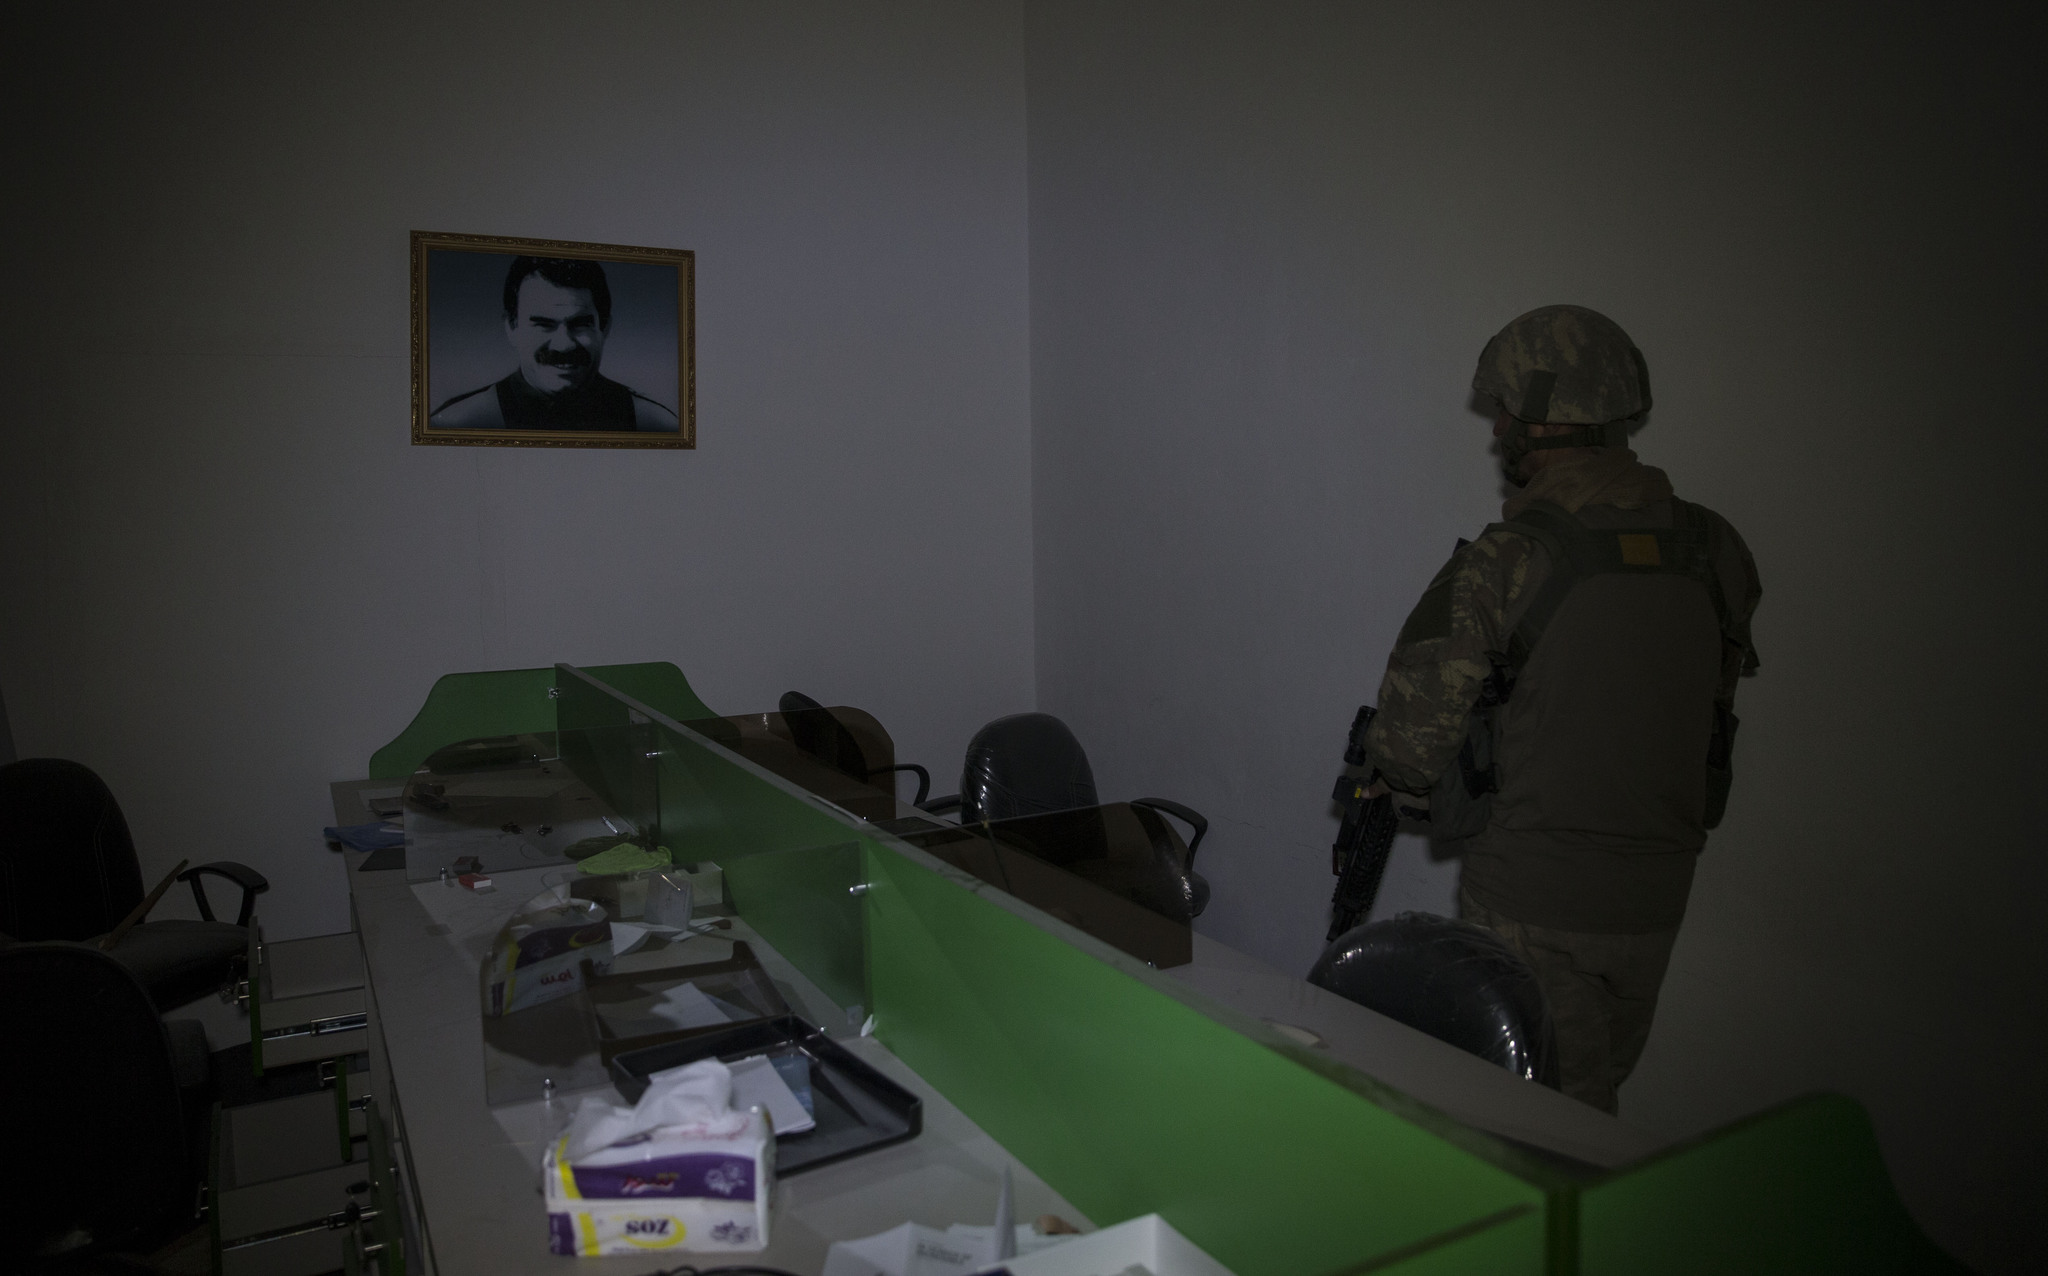 Mehmetçik Afrin’de terör örgütünün karargahını buldu